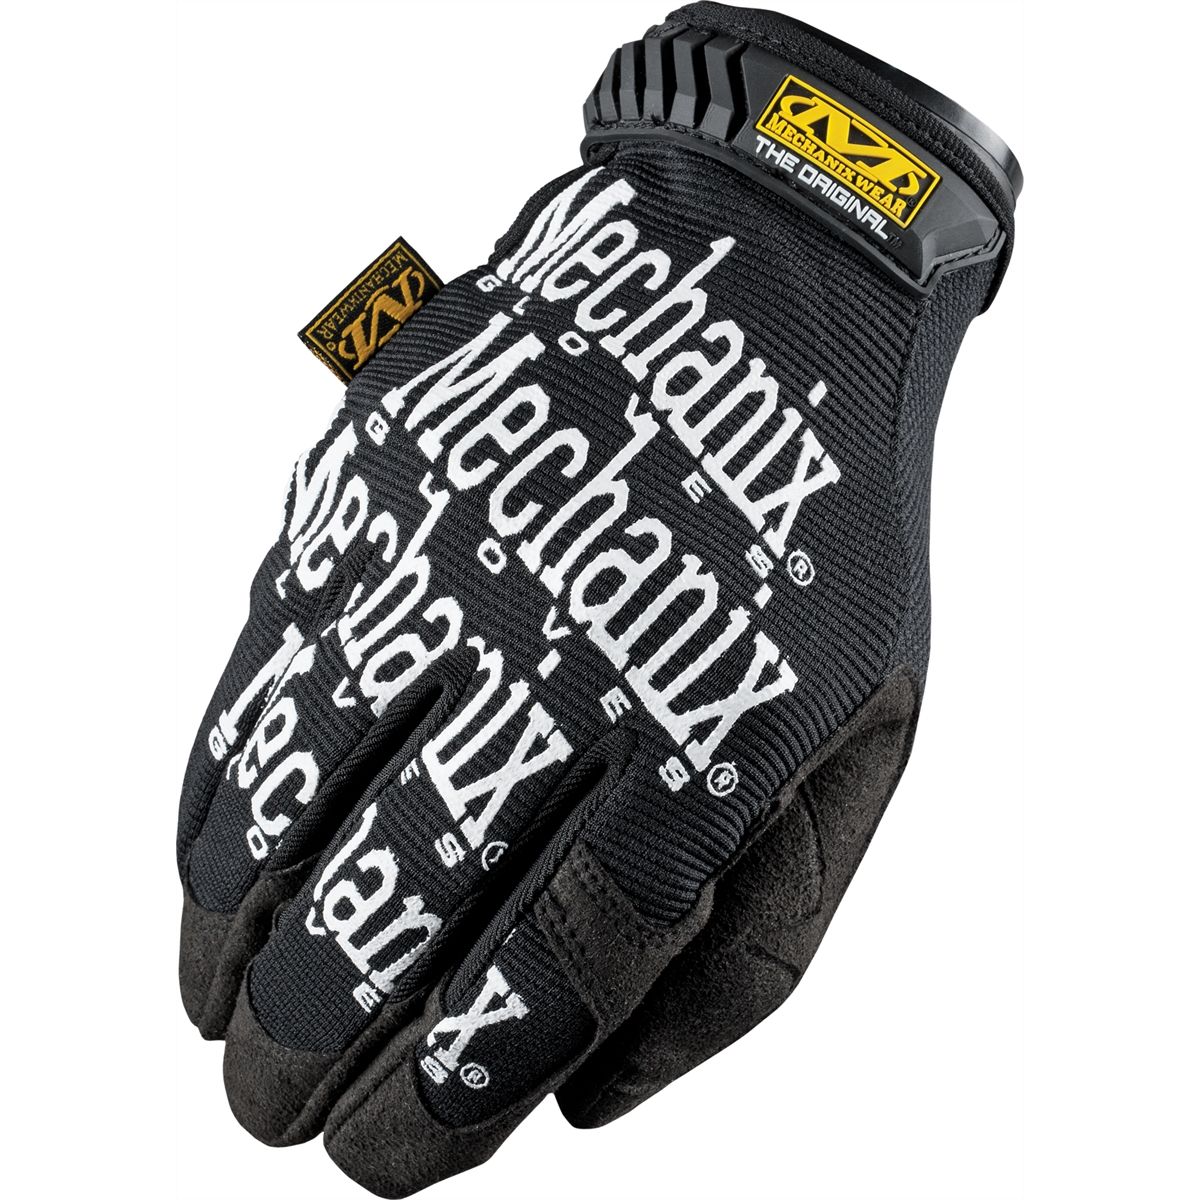 Original Gloves Black - X Large